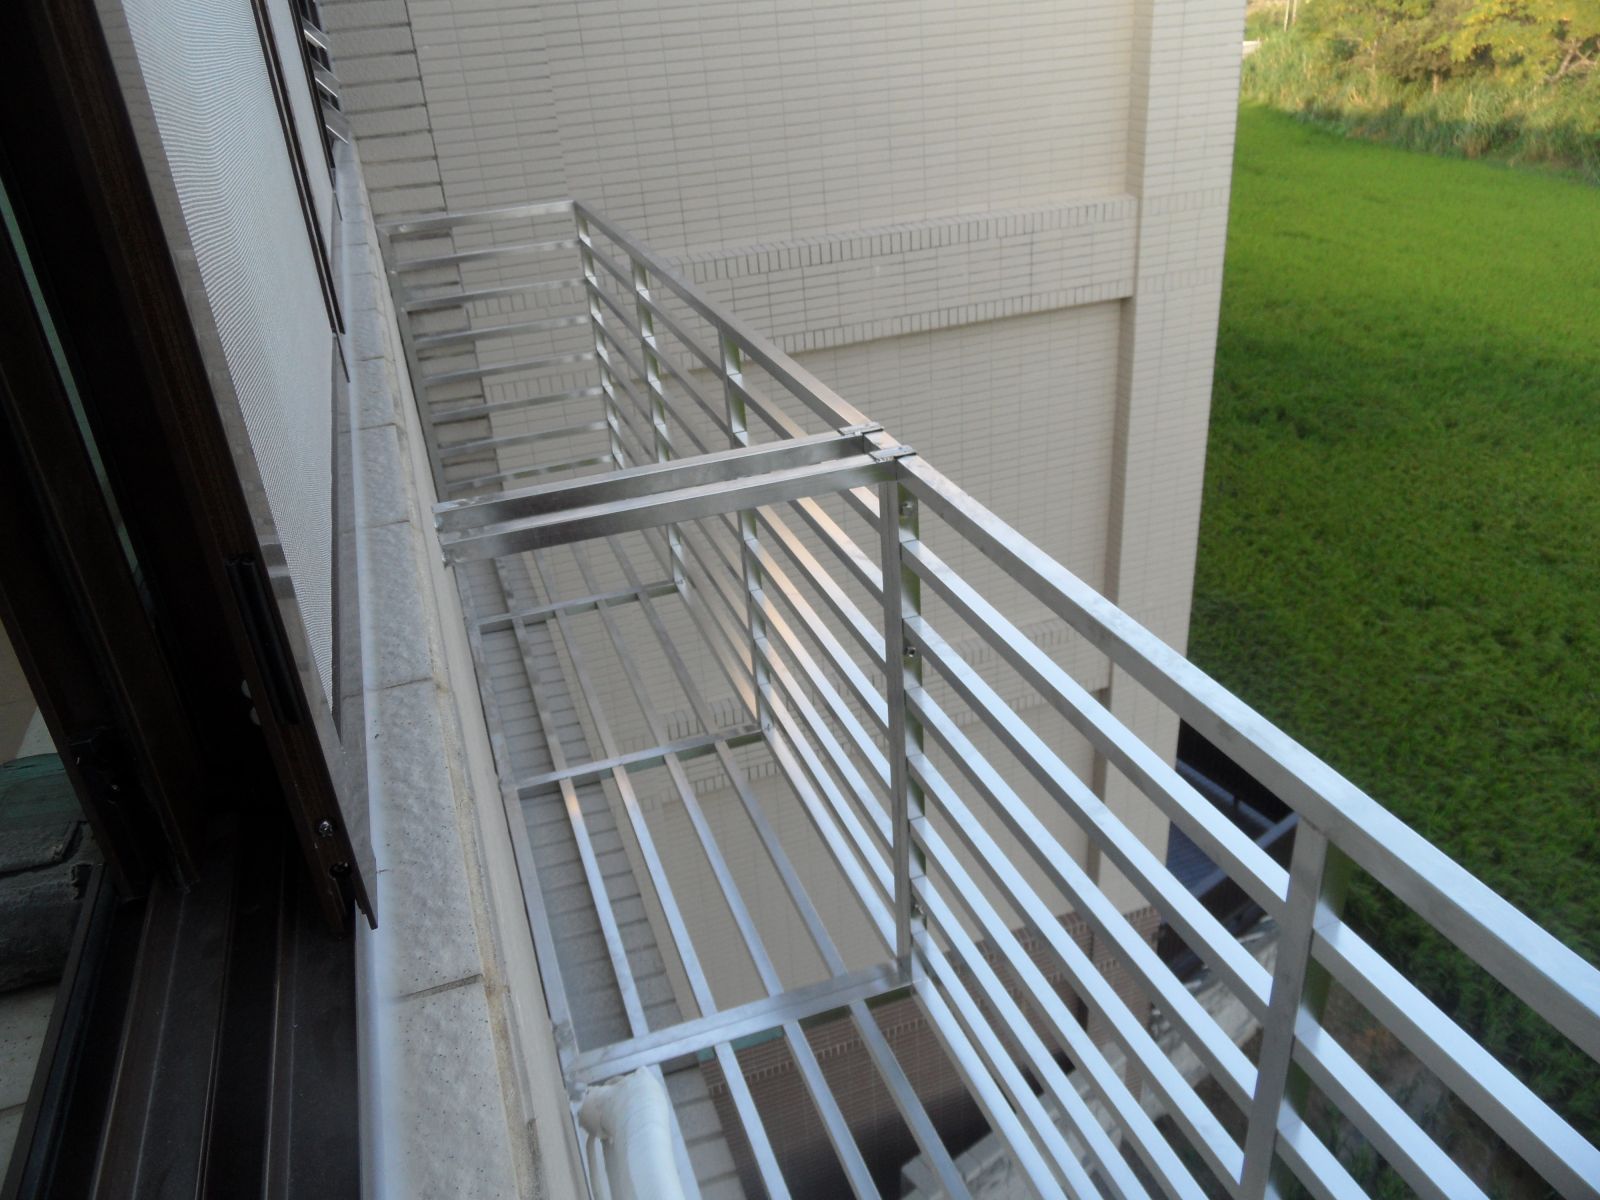 不銹鋼冷氣平台護欄靈活運用每一寸空間.讓陽台充分發揮新機能